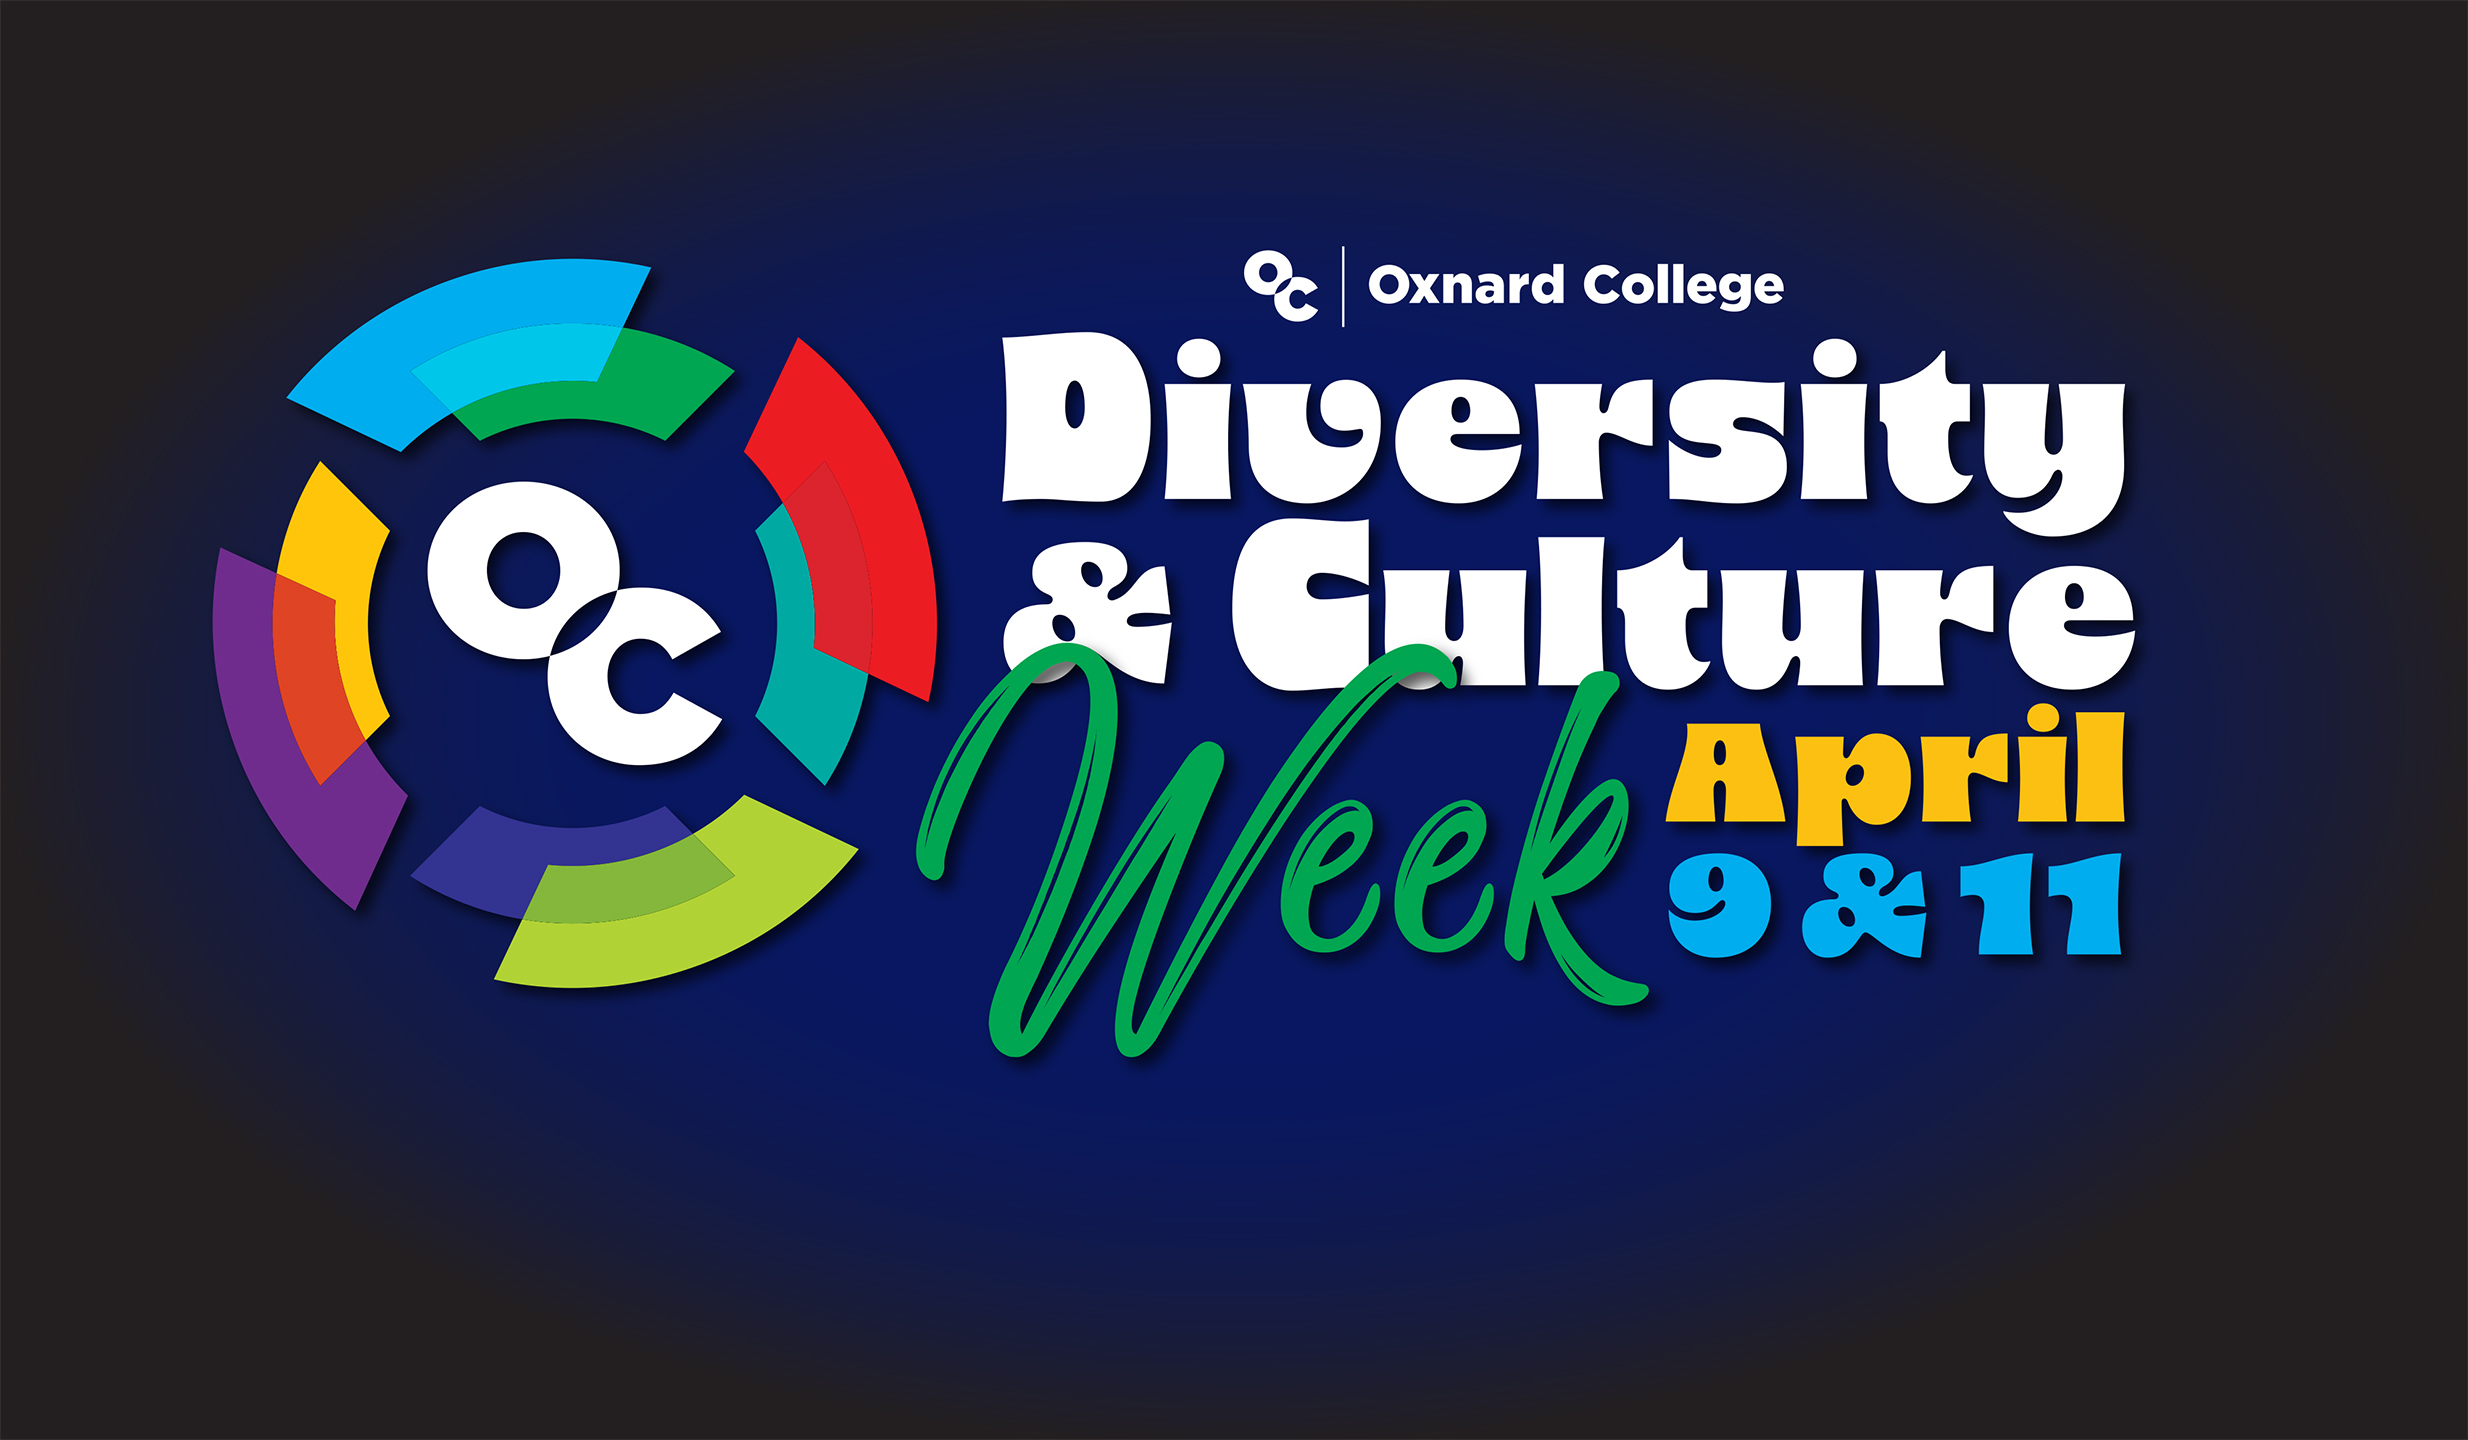 OC Diversity & Culture Week April 9 & 11